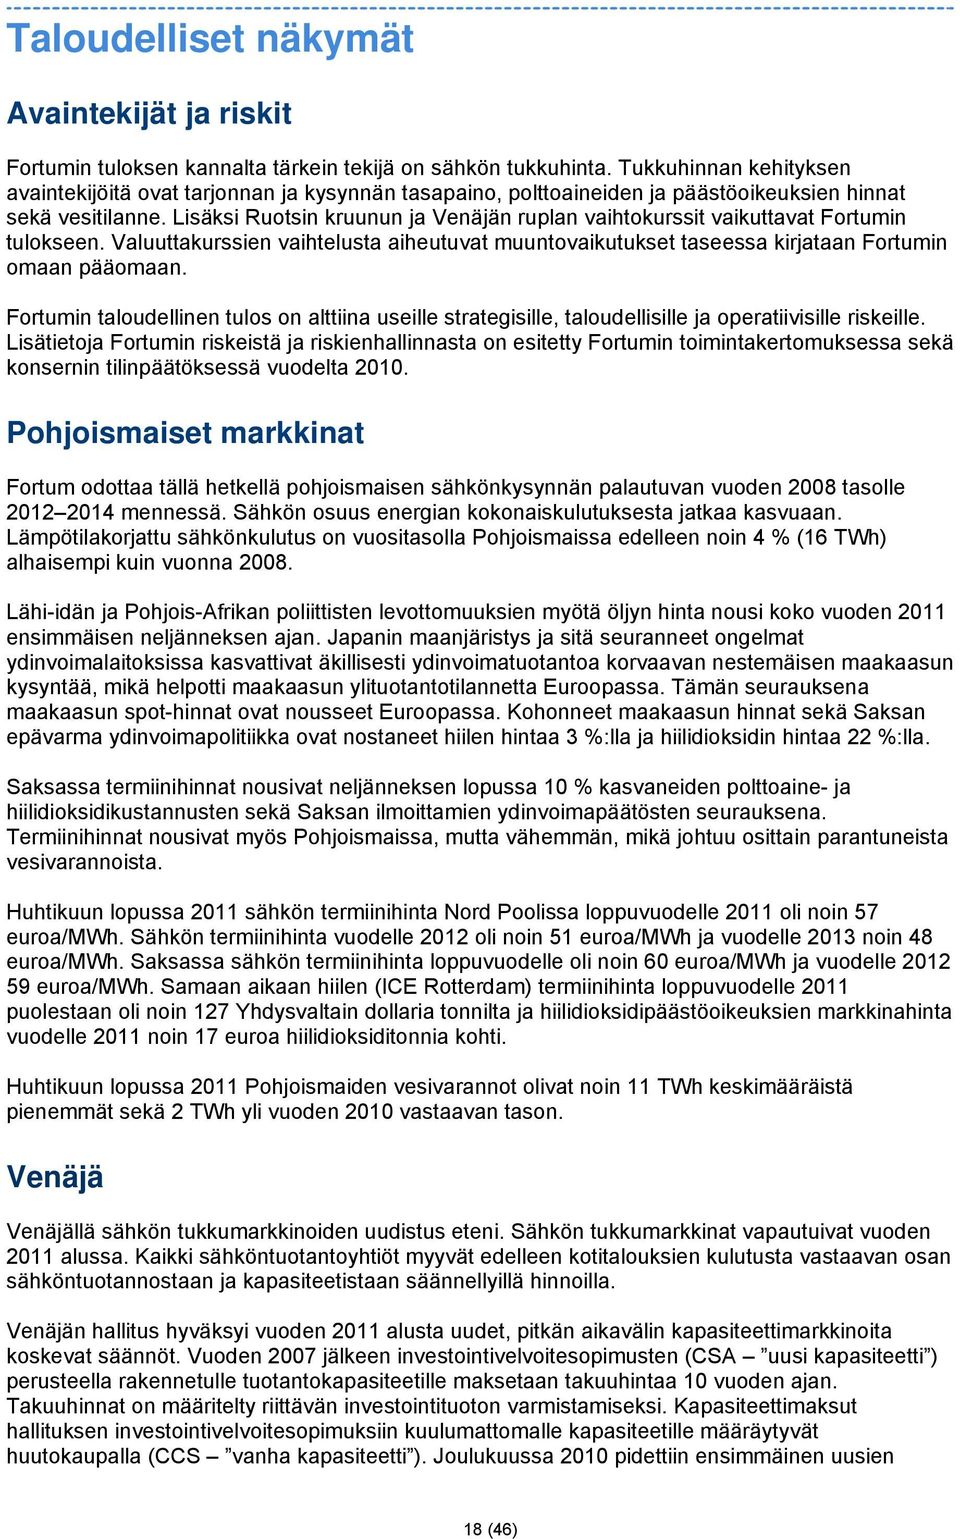 Lisäksi Ruotsin kruunun ja Venäjän ruplan vaihtokurssit vaikuttavat Fortumin tulokseen. Valuuttakurssien vaihtelusta aiheutuvat muuntovaikutukset taseessa kirjataan Fortumin omaan pääomaan.